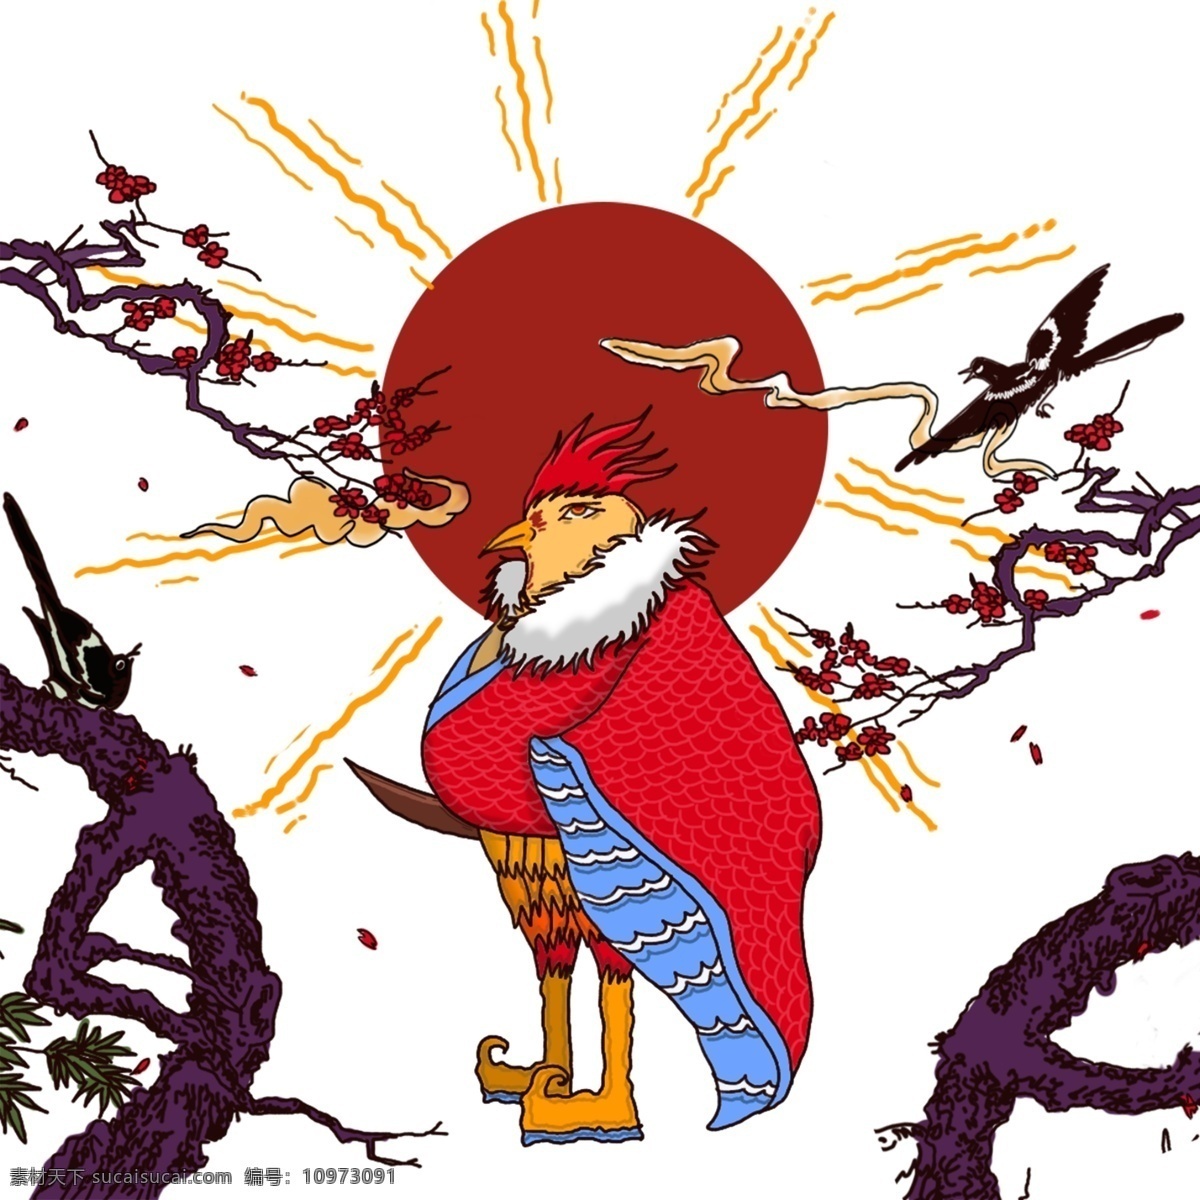 手绘 卡通 生肖 公鸡 鸡 卡通动物 动物 红色 中国风 创意 矢量 喜鹊 梅花 红日 传统图案